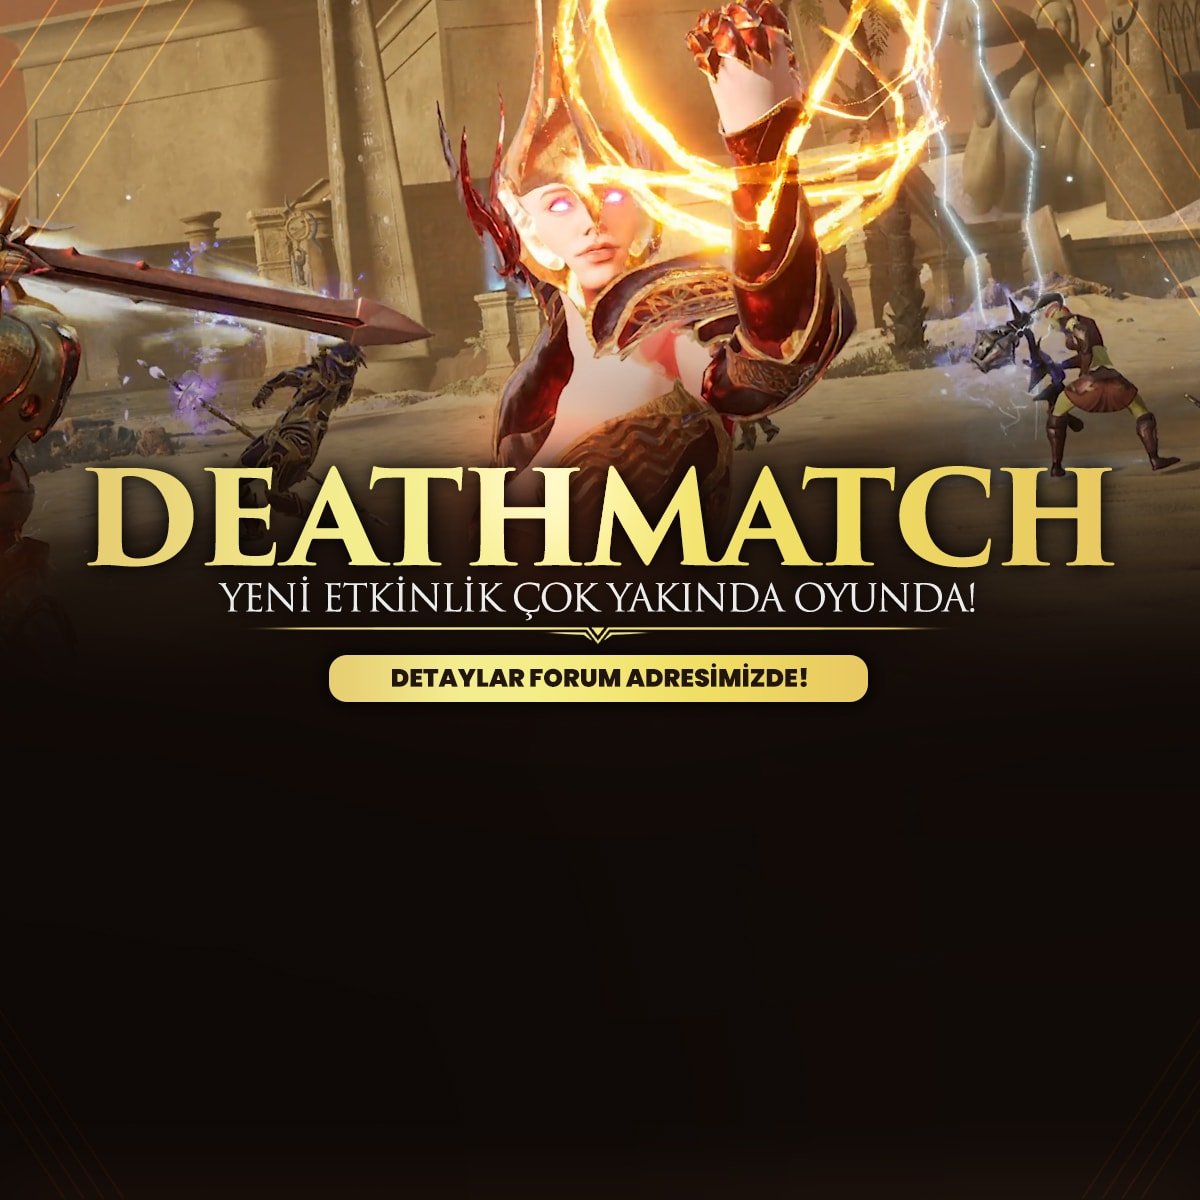 Deathmatch Etkinliği Geliyor!